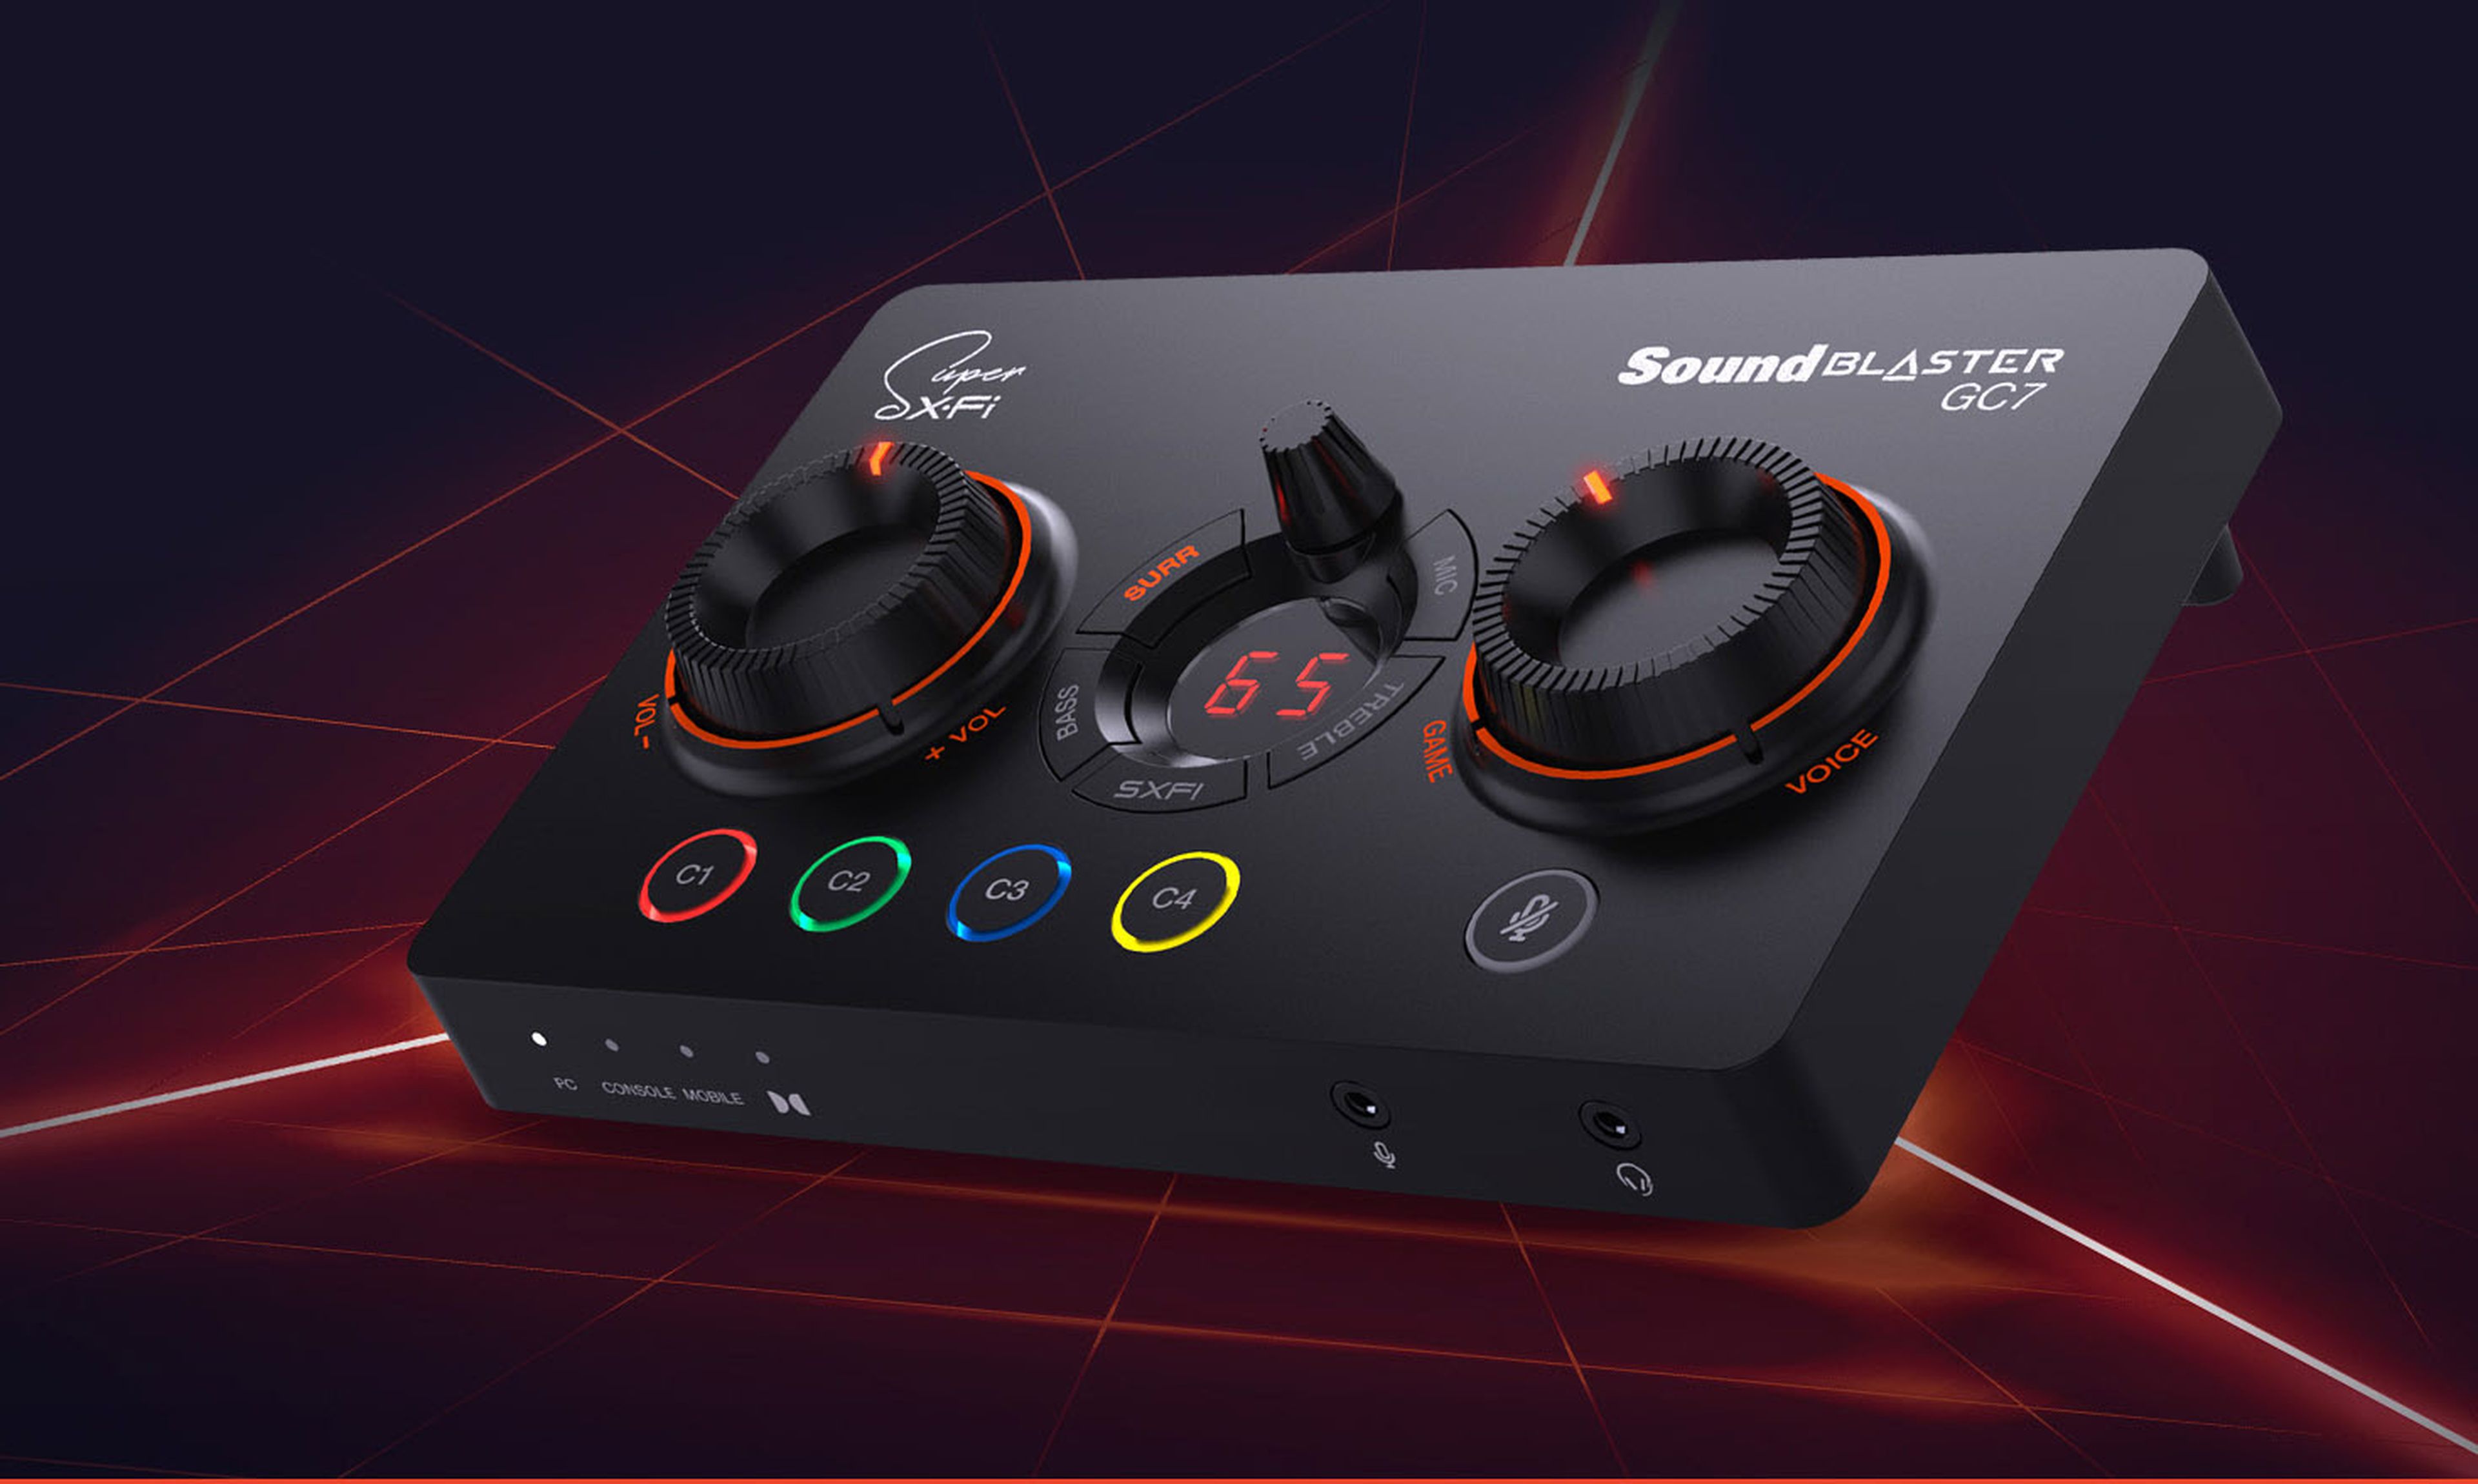 Análisis de Sound Blaster GC7, una nueva y versátil tarjeta gráfica de sonido  externa con controles físicos